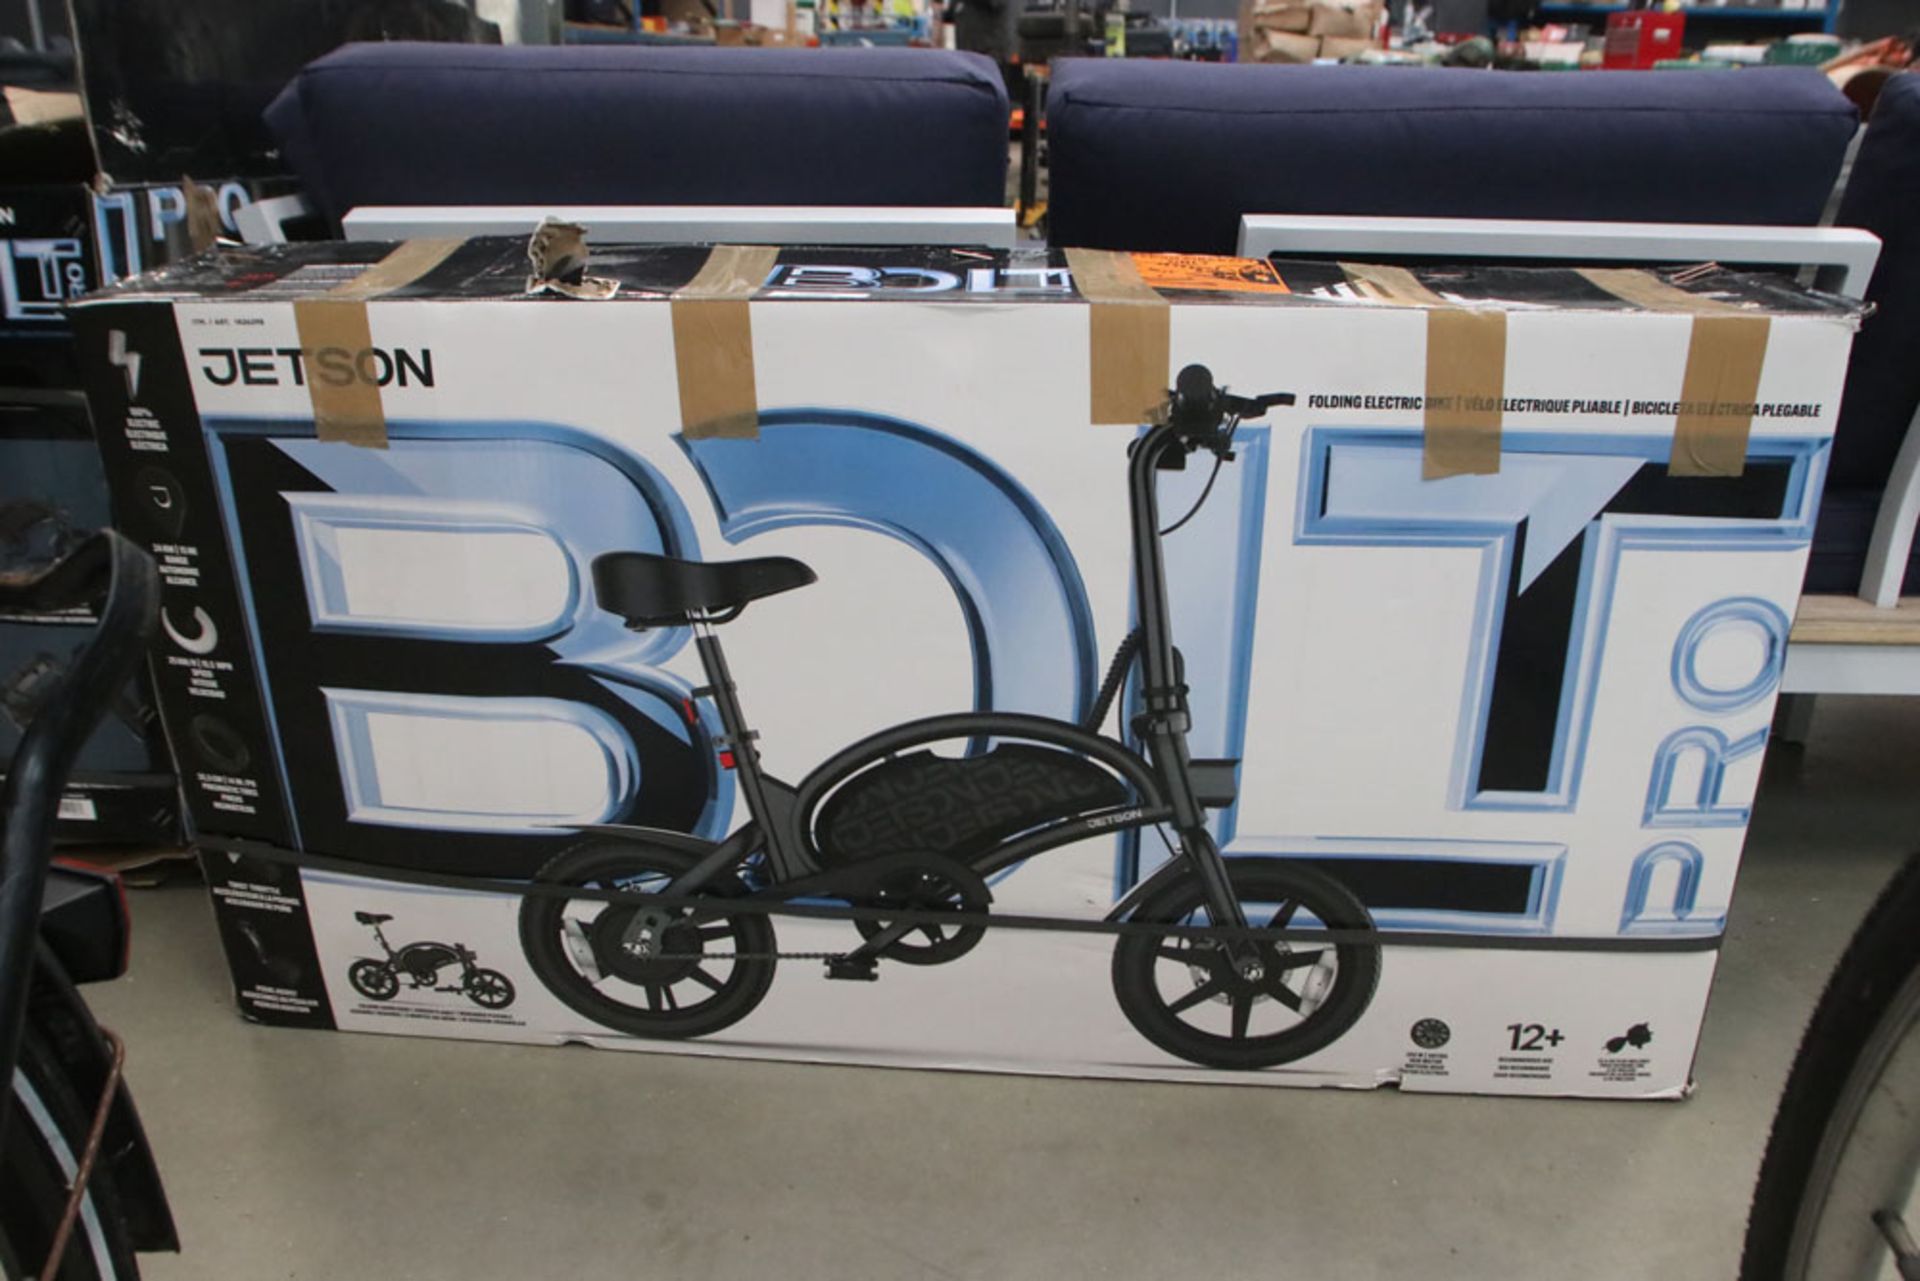 Boxed Jetson electric bike